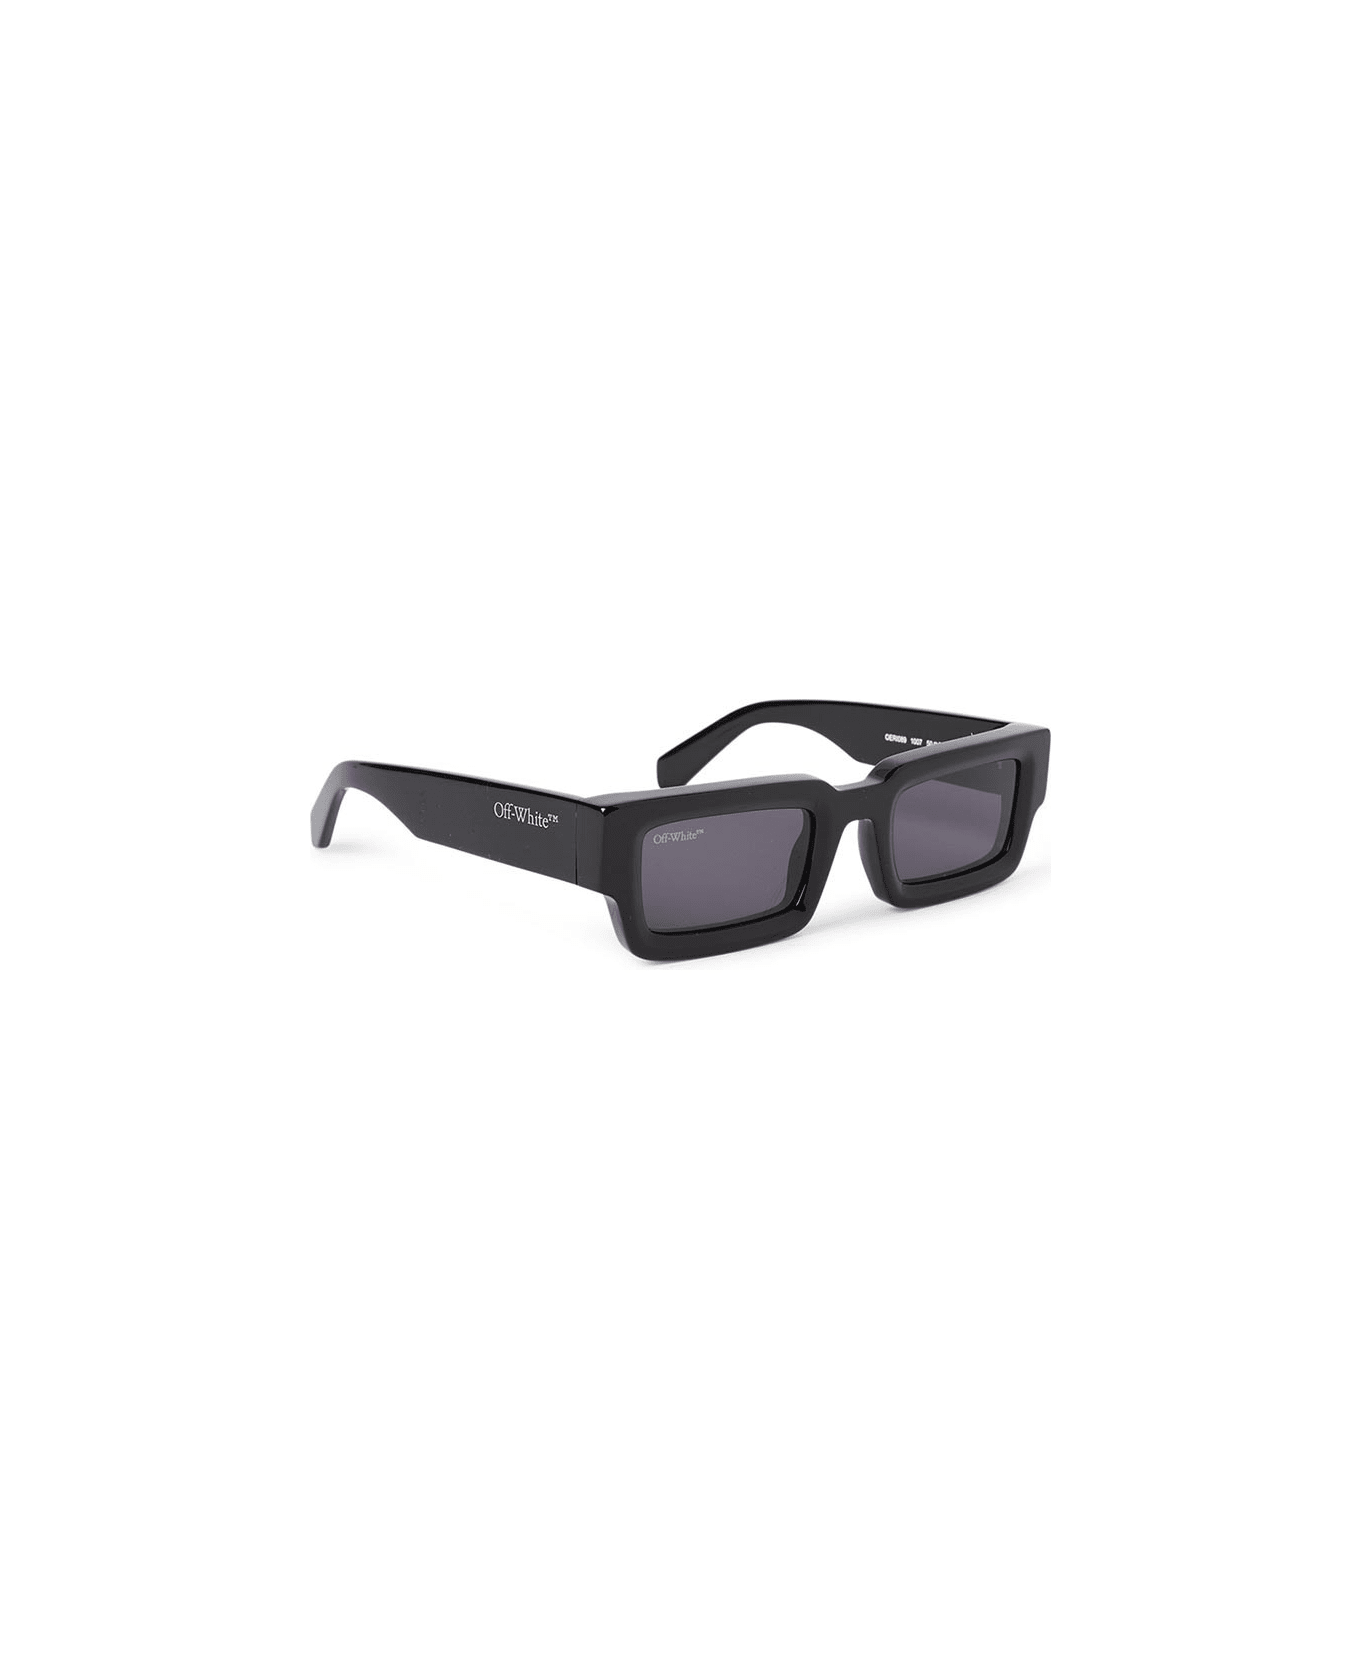 Off-White Lecce Sunglasses - Nero/Grigio サングラス